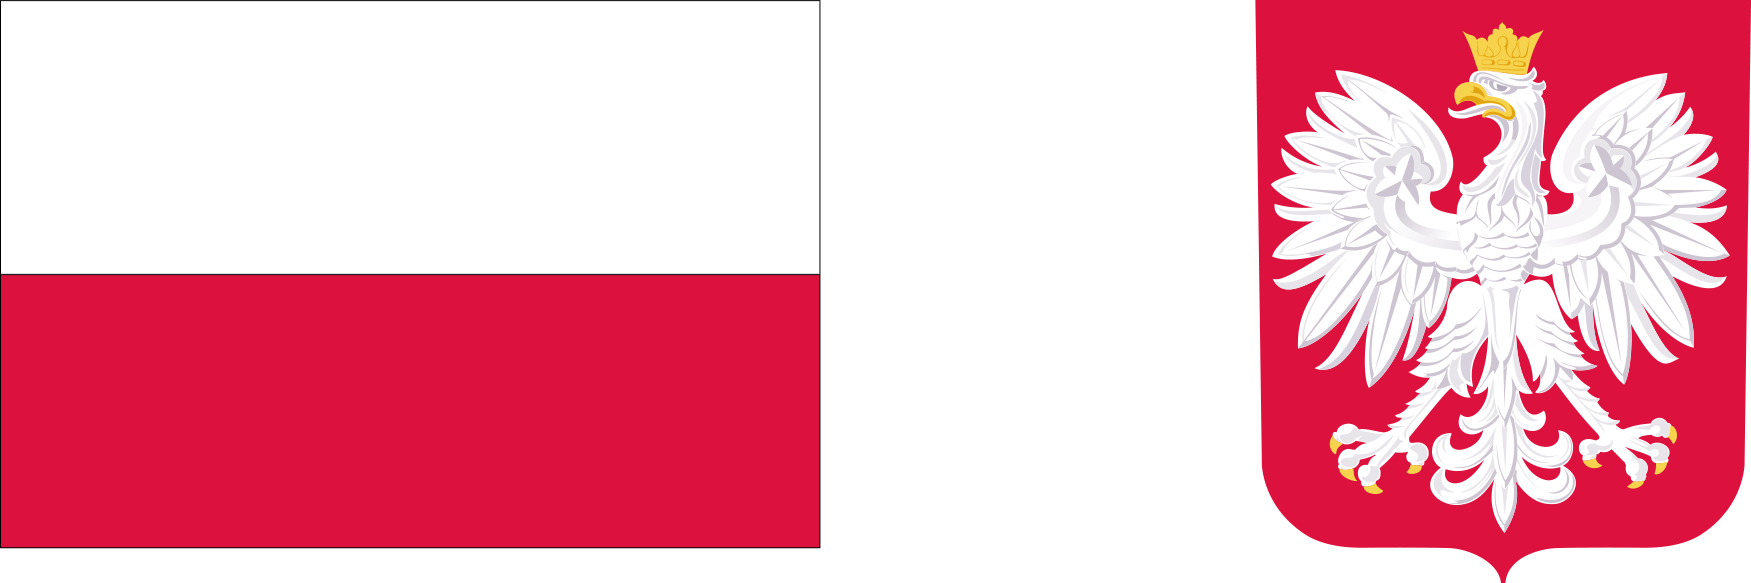 Logotypy zawierające barwy Rzeczypospolitej Polskiej i wizerunek godła Rzeczypospolitej Polskiej